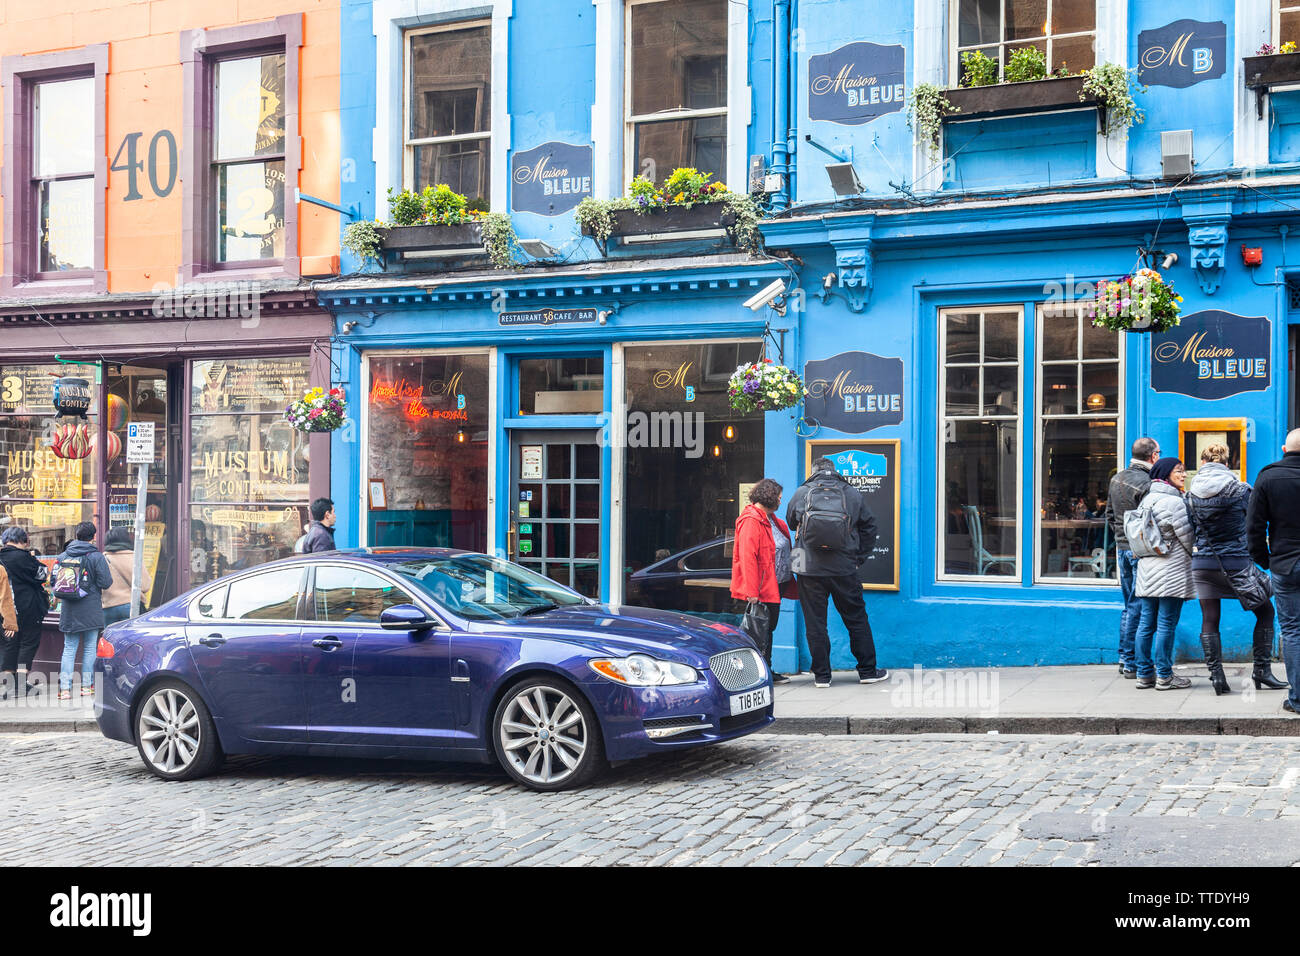 Un blu scuro Jaguar auto parcheggiate fuori la Maison Bleue, un ristorante francese in Victoria Street, Edimburgo, accanto al Museo contesto un Harry Potter shop. Foto Stock